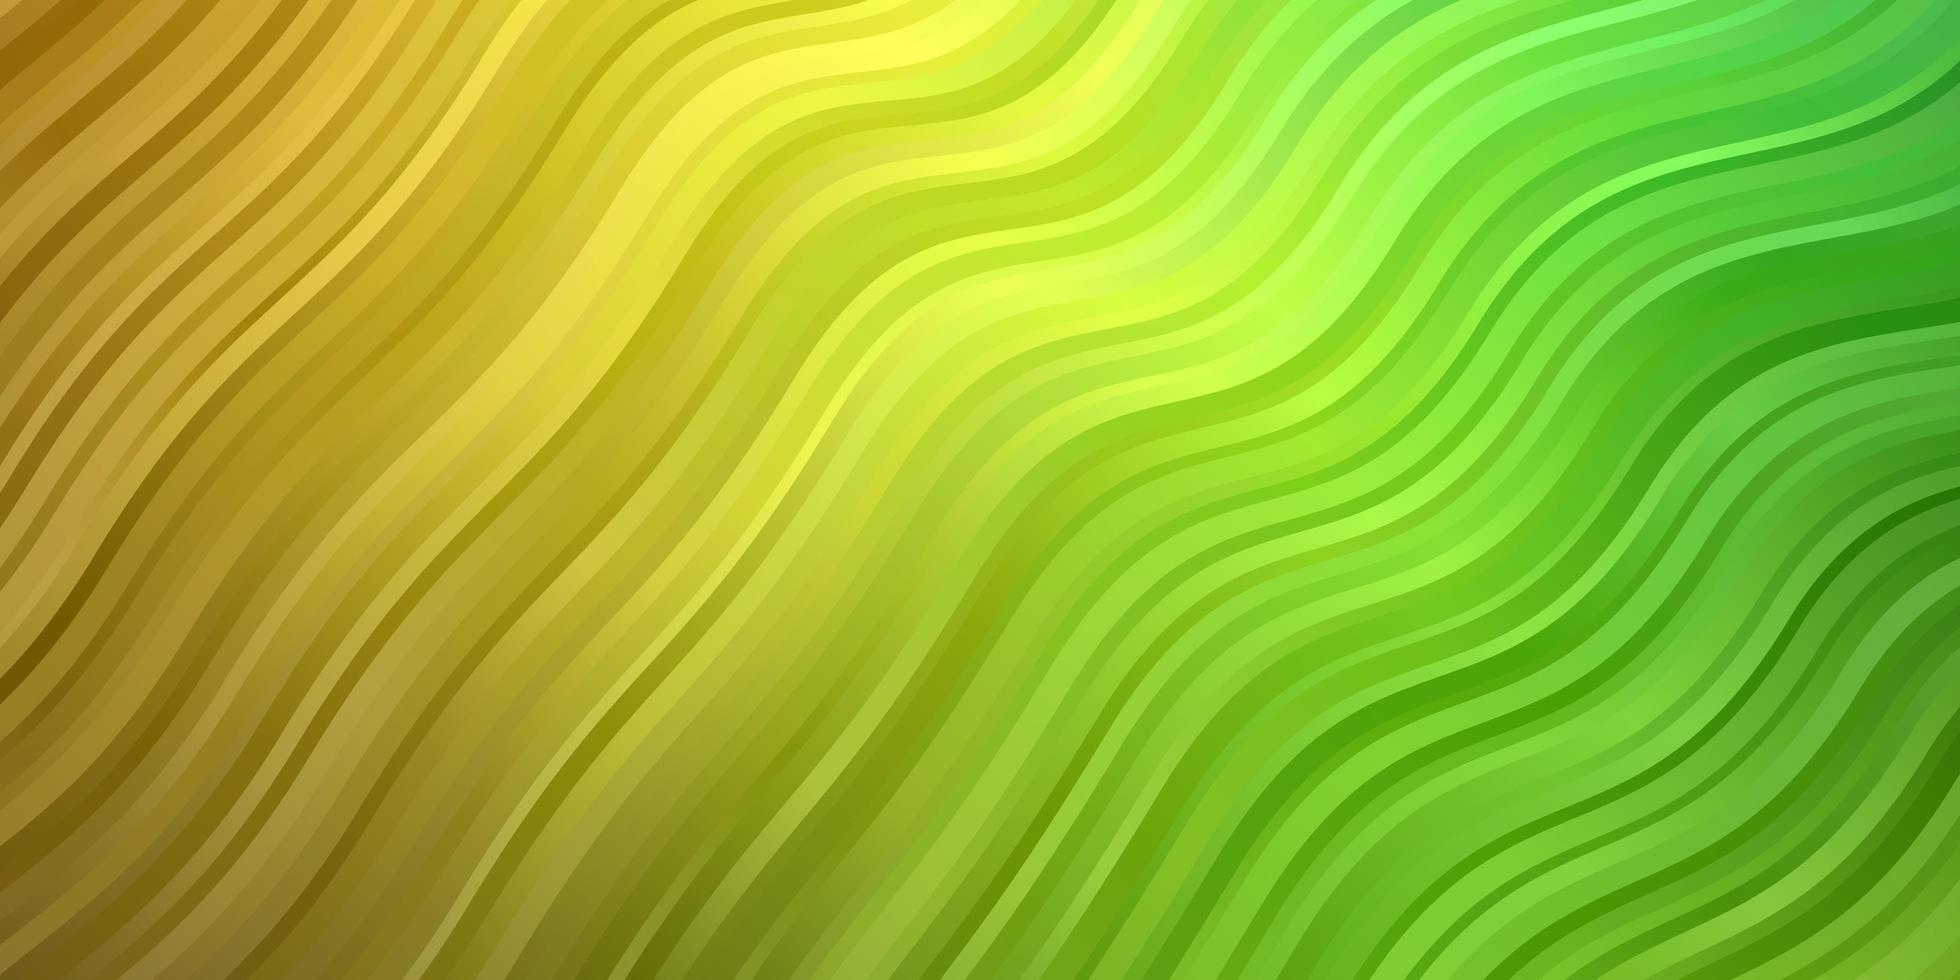 sfondo vettoriale verde chiaro, giallo con curve.